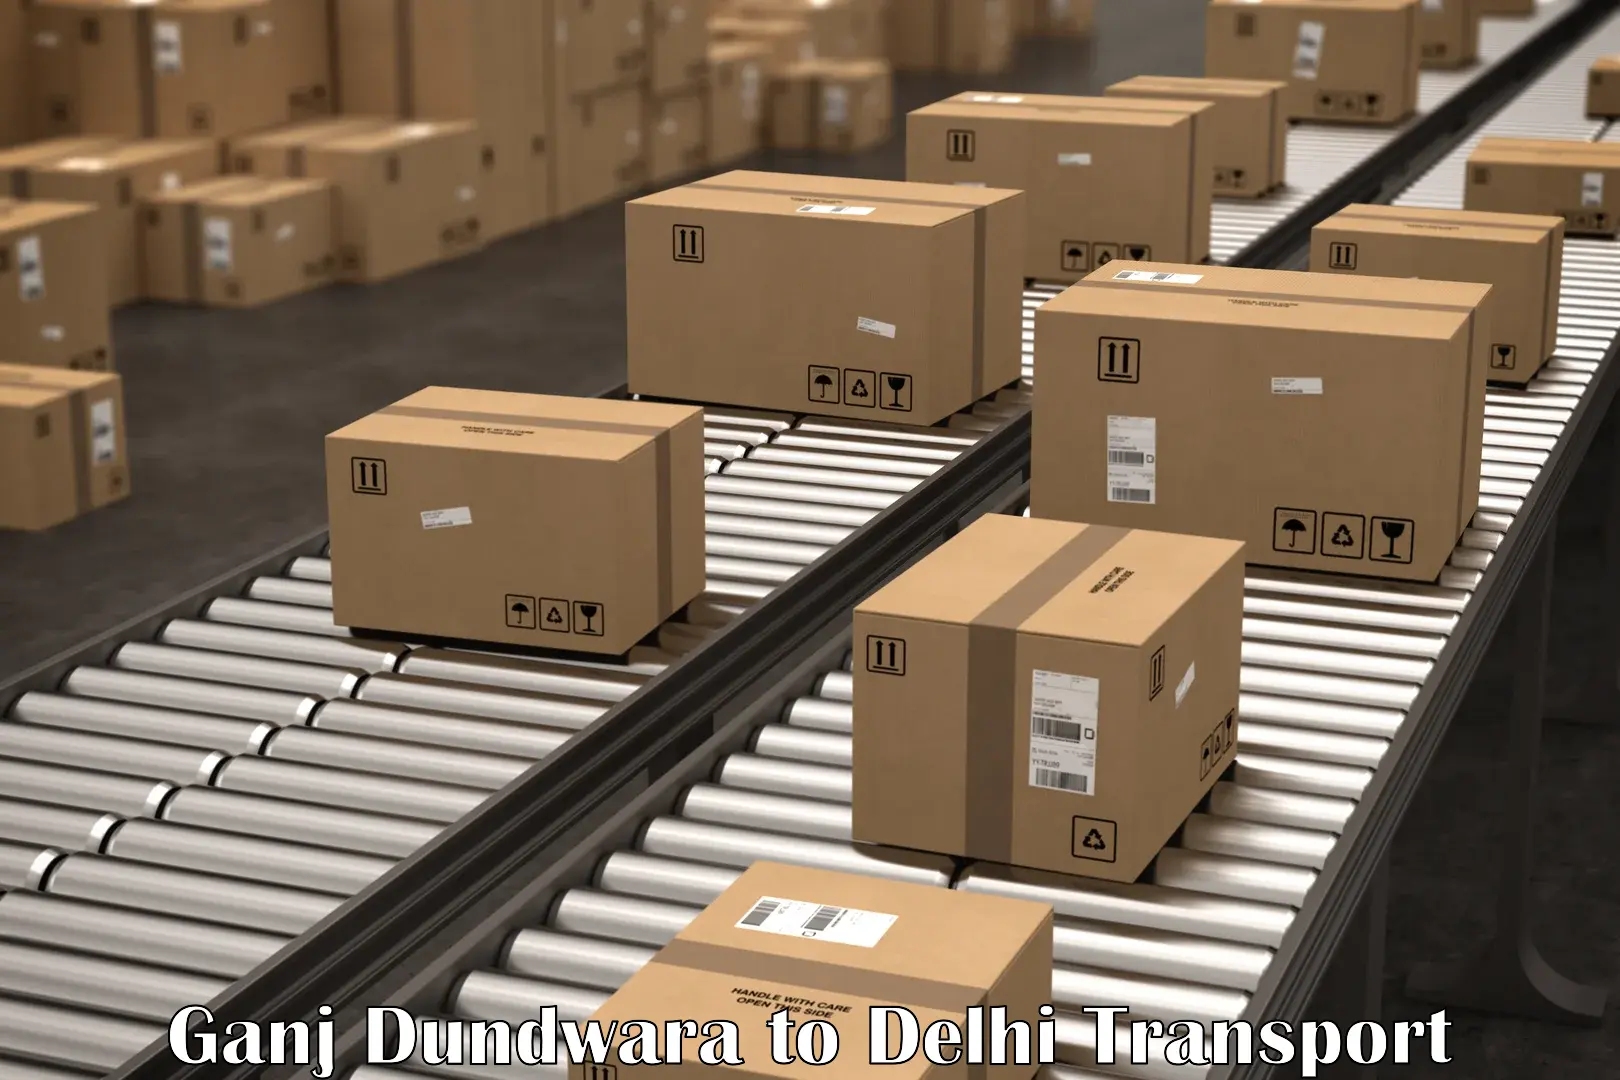 Package delivery services Ganj Dundwara to Delhi Technological University DTU